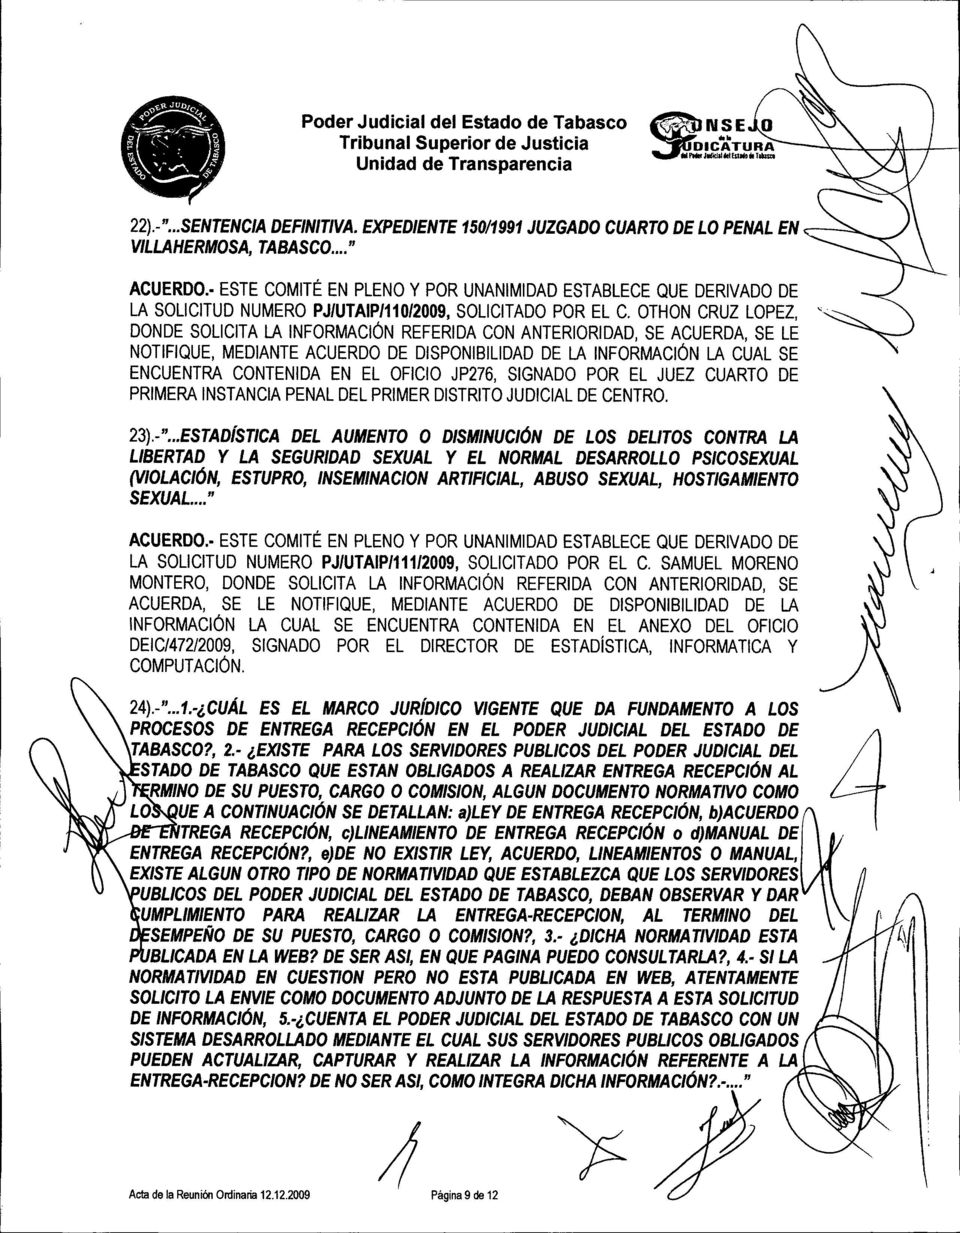 POR EL JUEZ CUARTO DE PRIMERA INSTANCIA PENAL DEL PRIMER DISTRITO JUDICIAL DE CENTRO. 23).-".